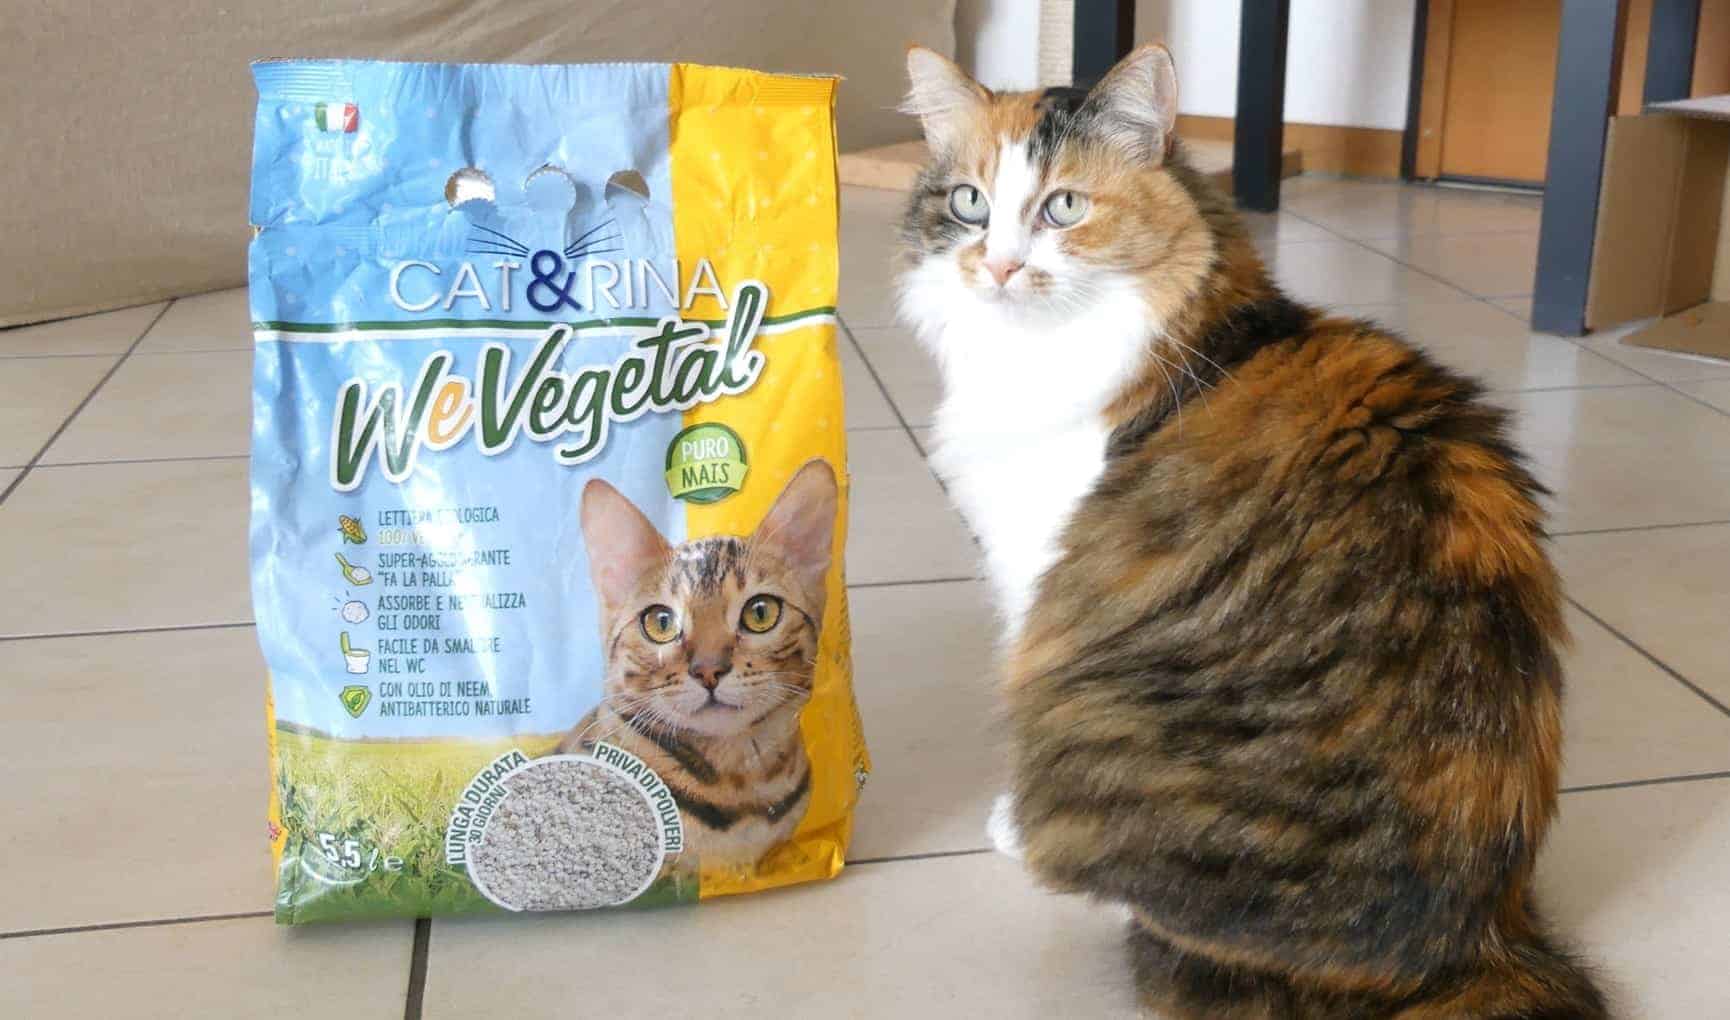 Notebook Reserve benefit WeVegetal la nuova lettiera ecologica per gatti in mais - MicioGatto.it